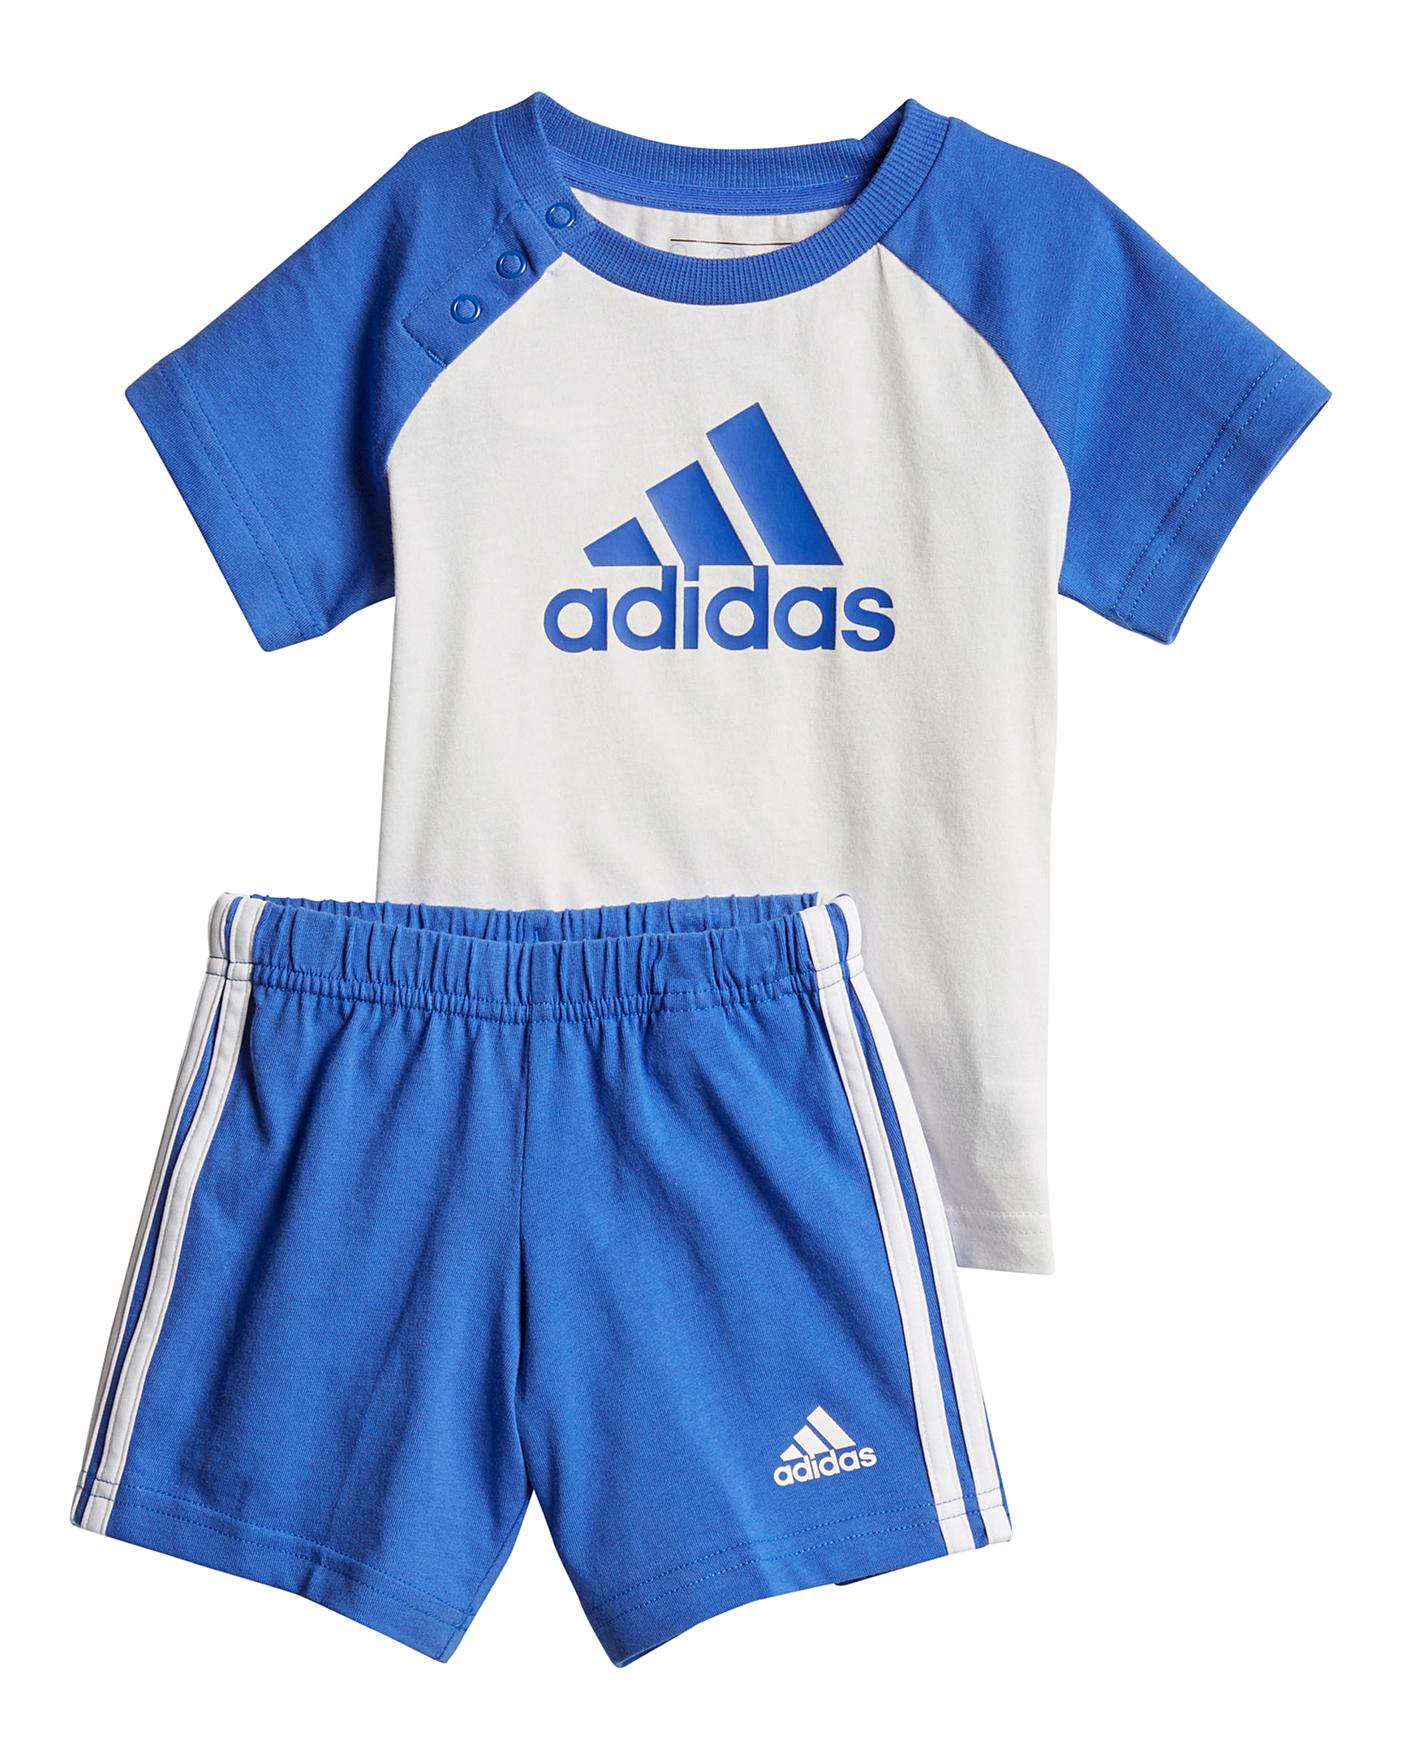 adidas for infant boy